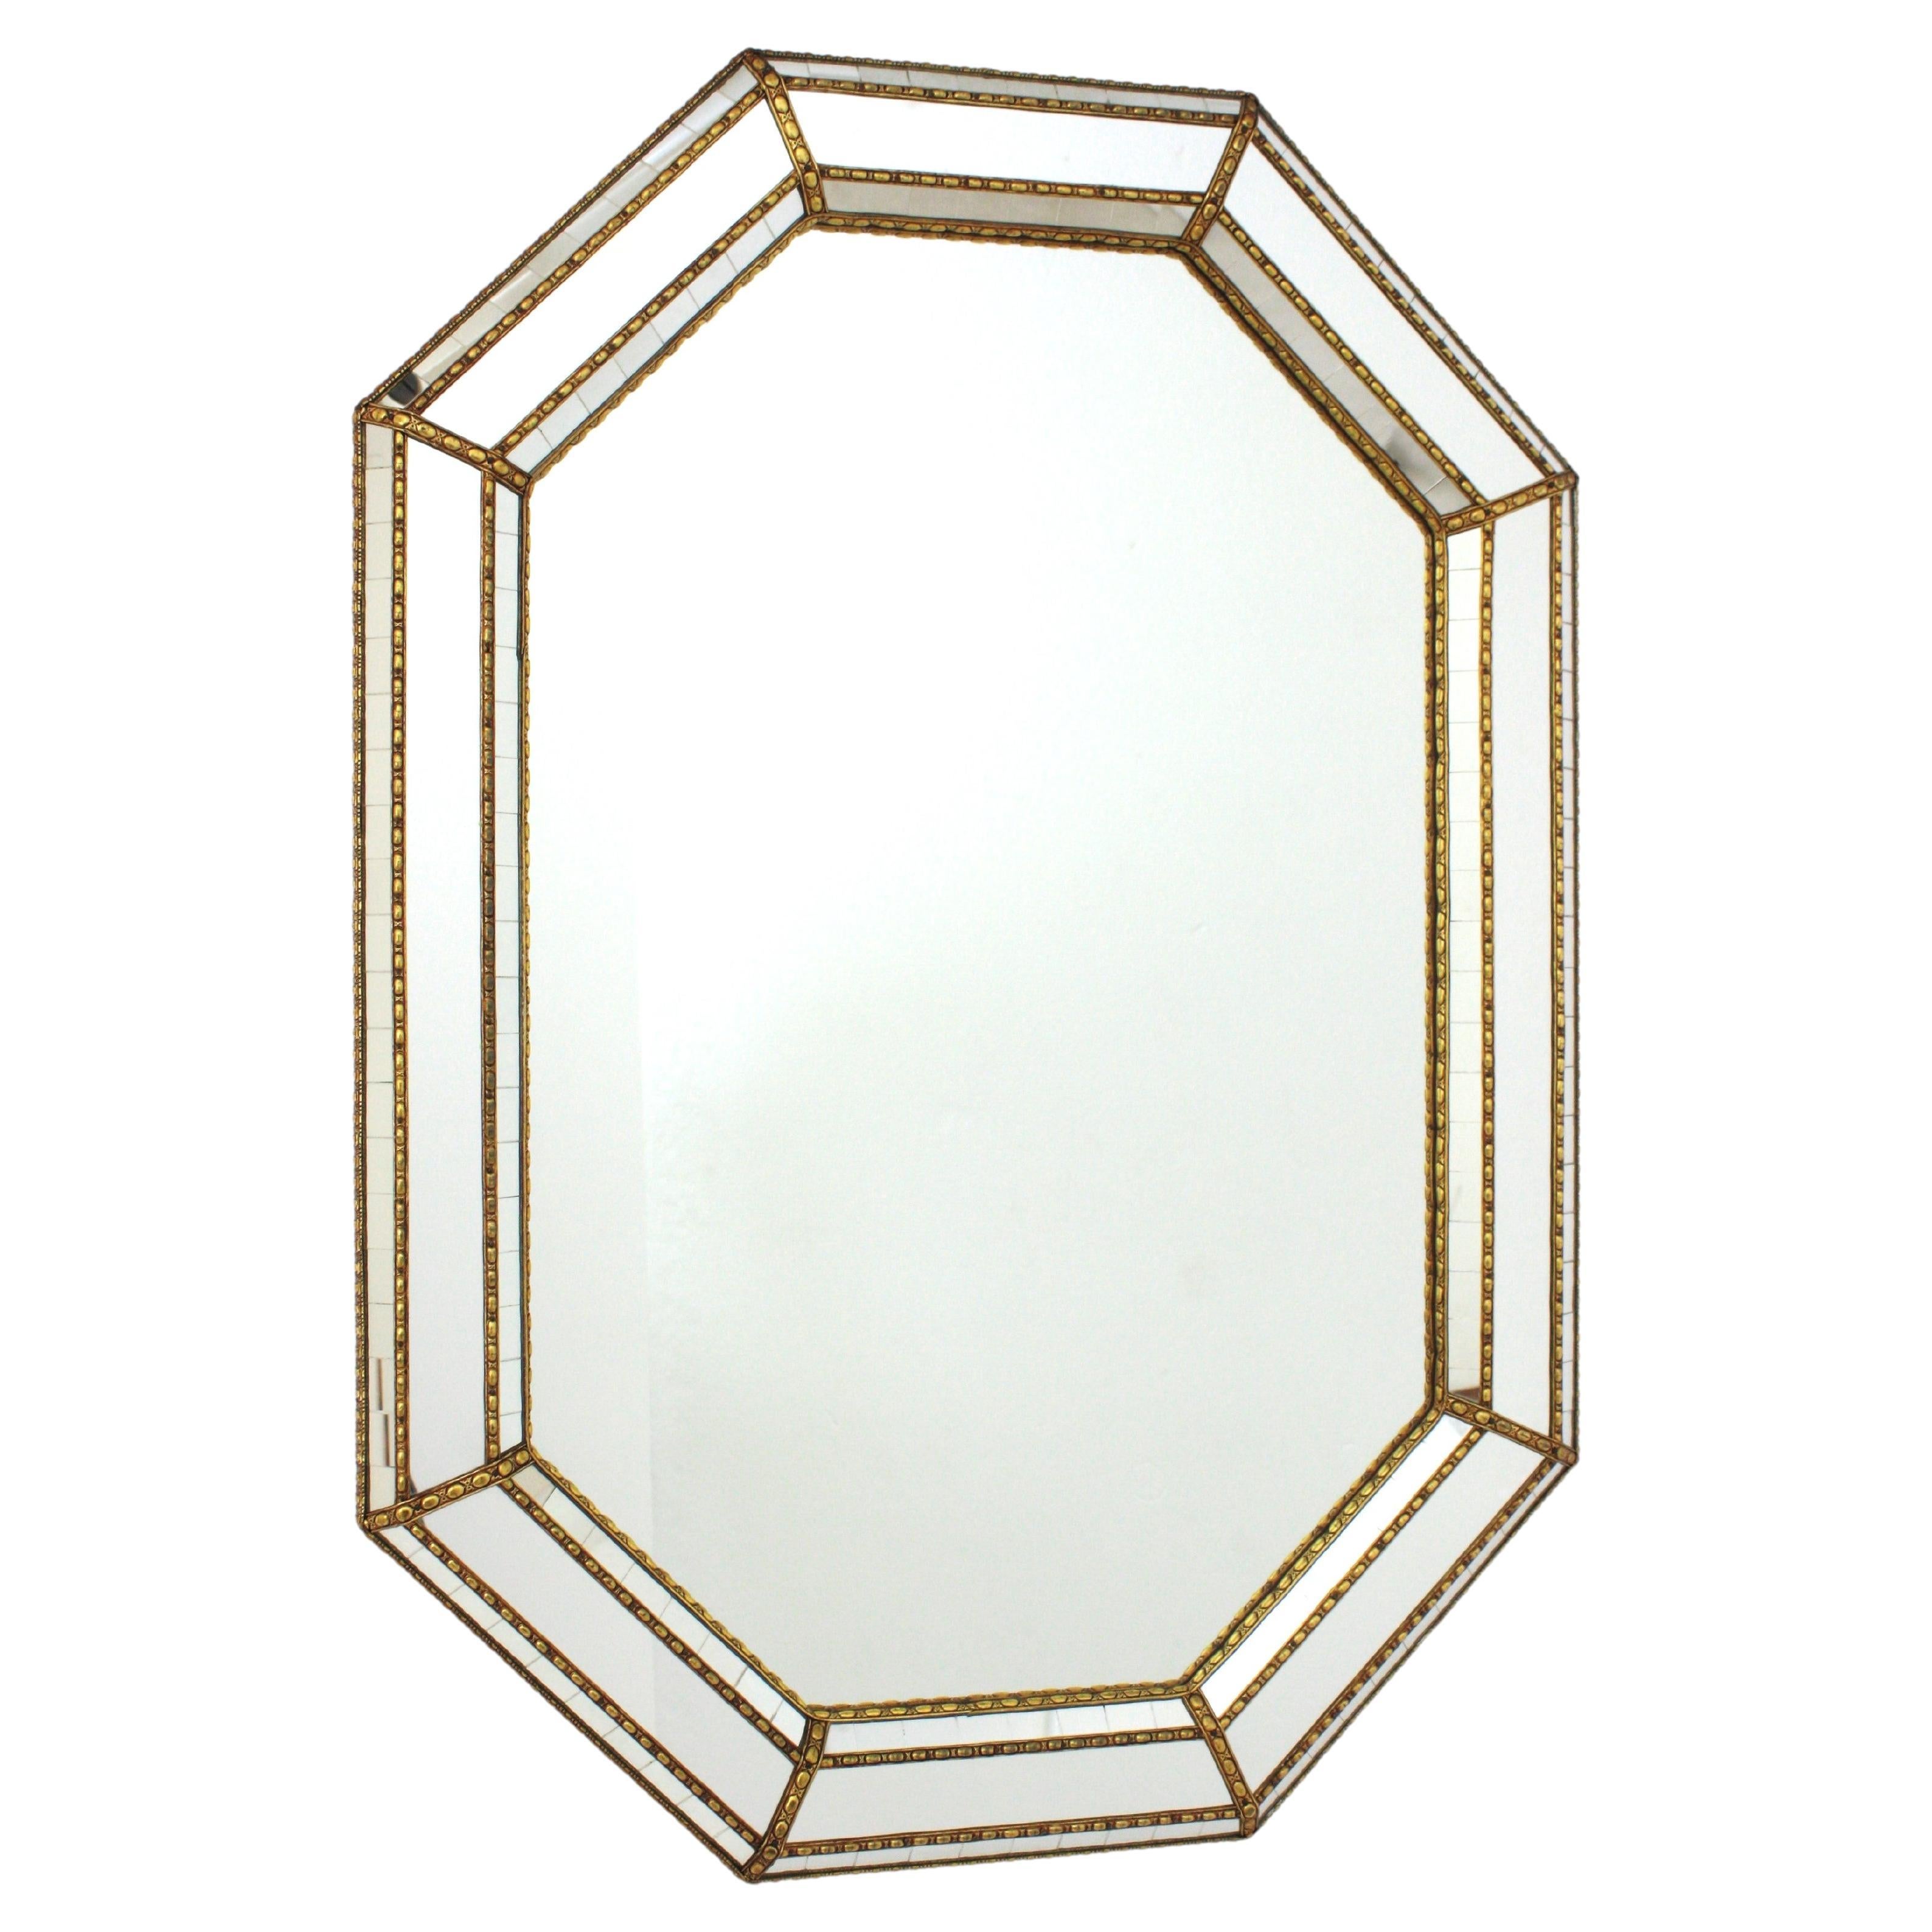 Miroir mural octogonal moderne vénitien avec cadre en laiton
Miroir mural octogonal de style vénitien avec accents en métal doré, Espagne, années 1960
Ce miroir octogonal est doté d'un triple cadre. Deux niveaux de petits morceaux de miroir en